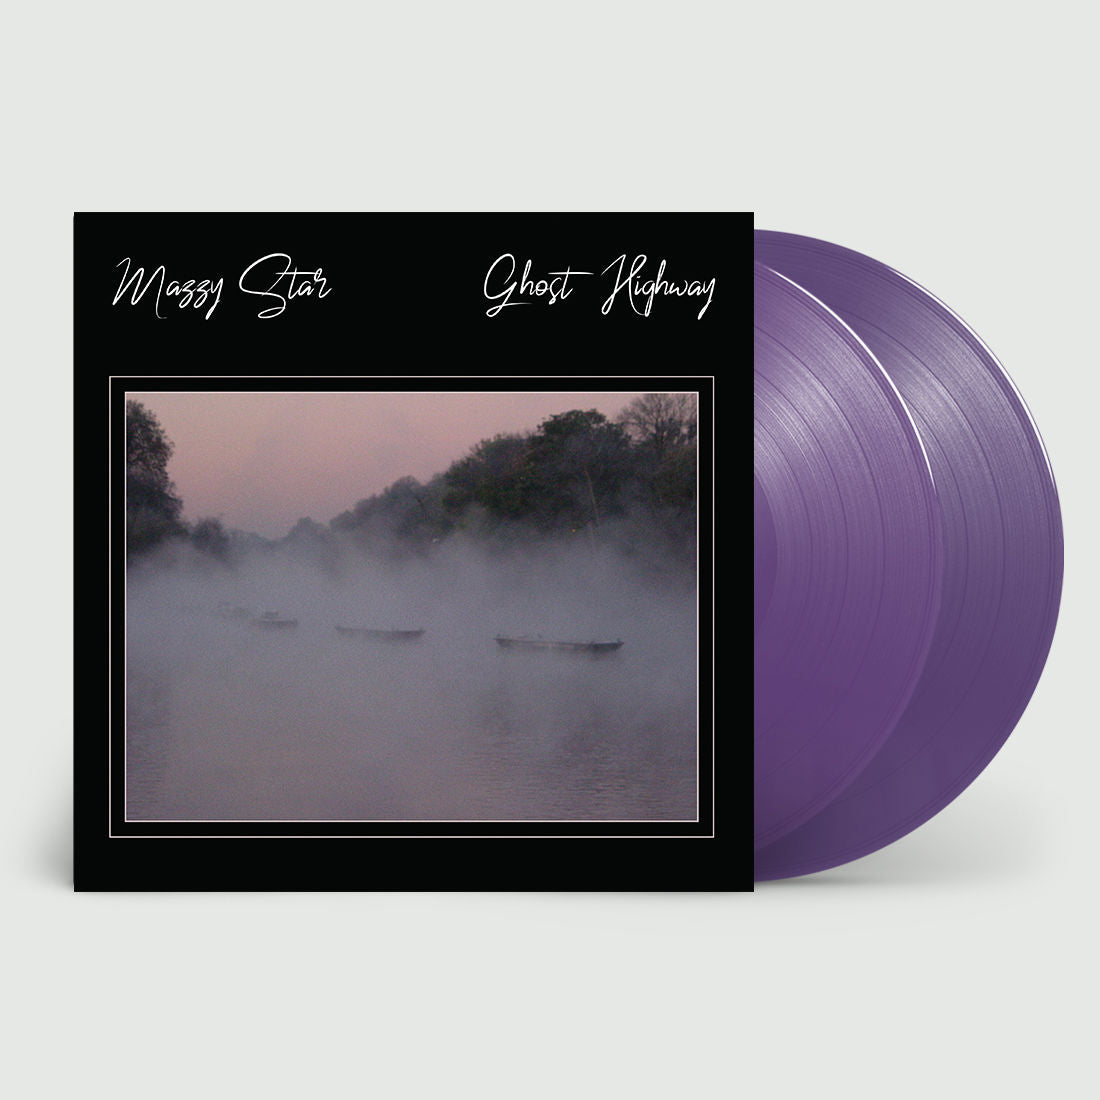 Ghost Highway: Limited Deluxe Purple Vinyl 2LP + Exclusive Art Print